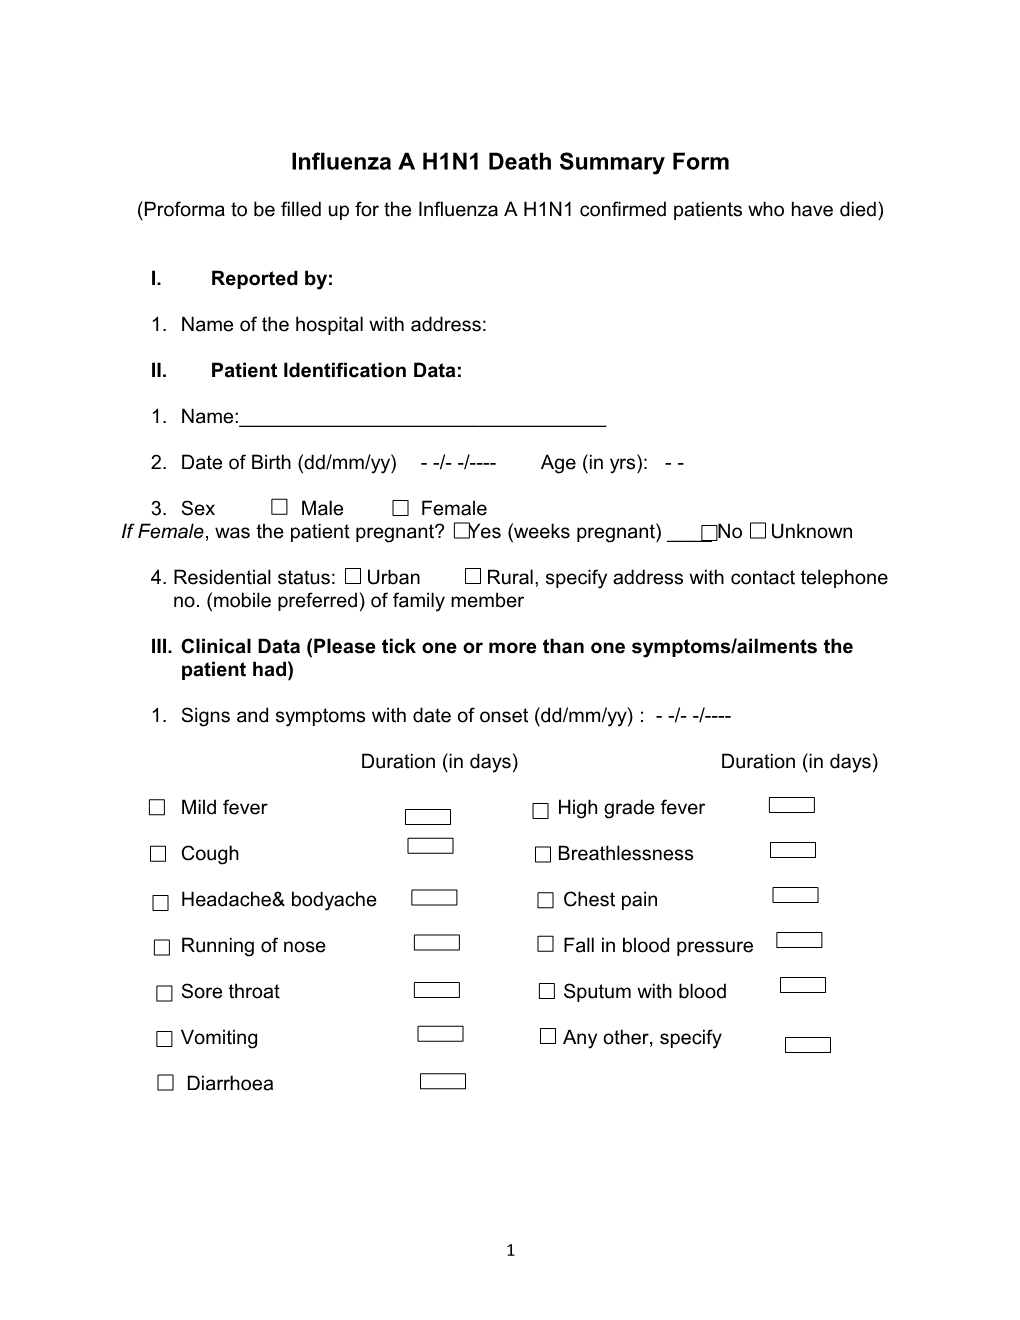 Influenza a H1N1 Death Summary Form